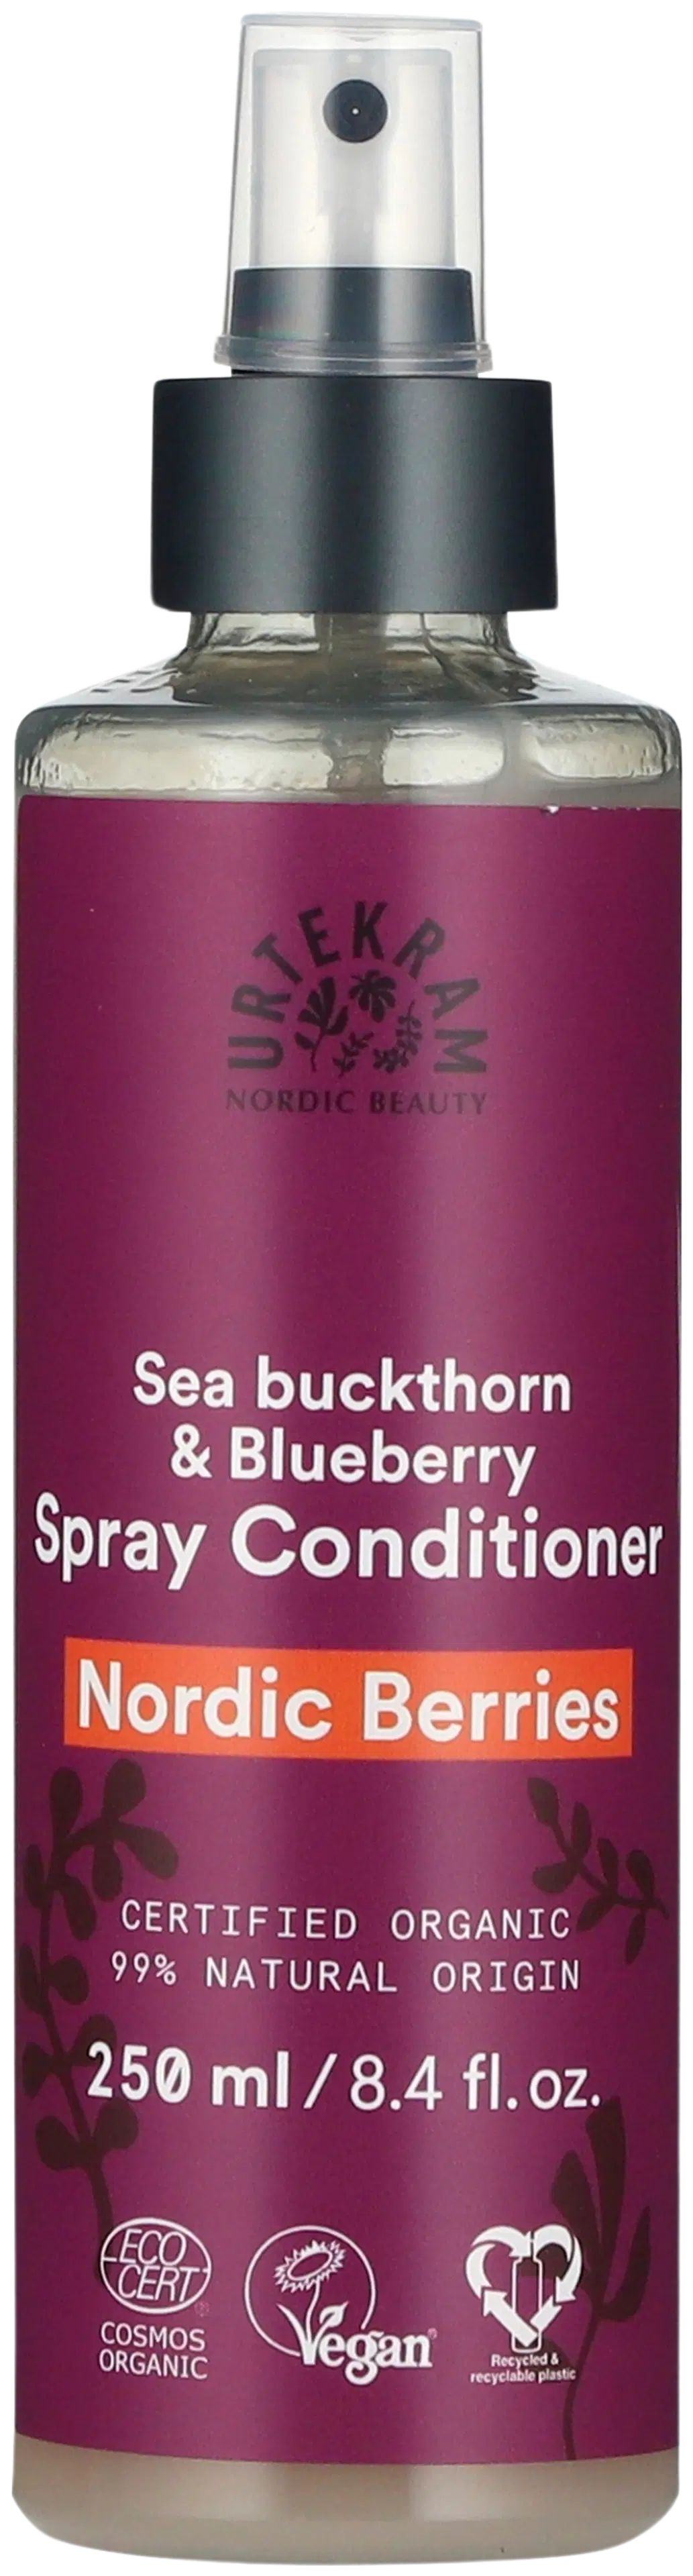 Urtekram luomu Nordic Berries hiuksiin jätettävä spray hoitoaine 250ml